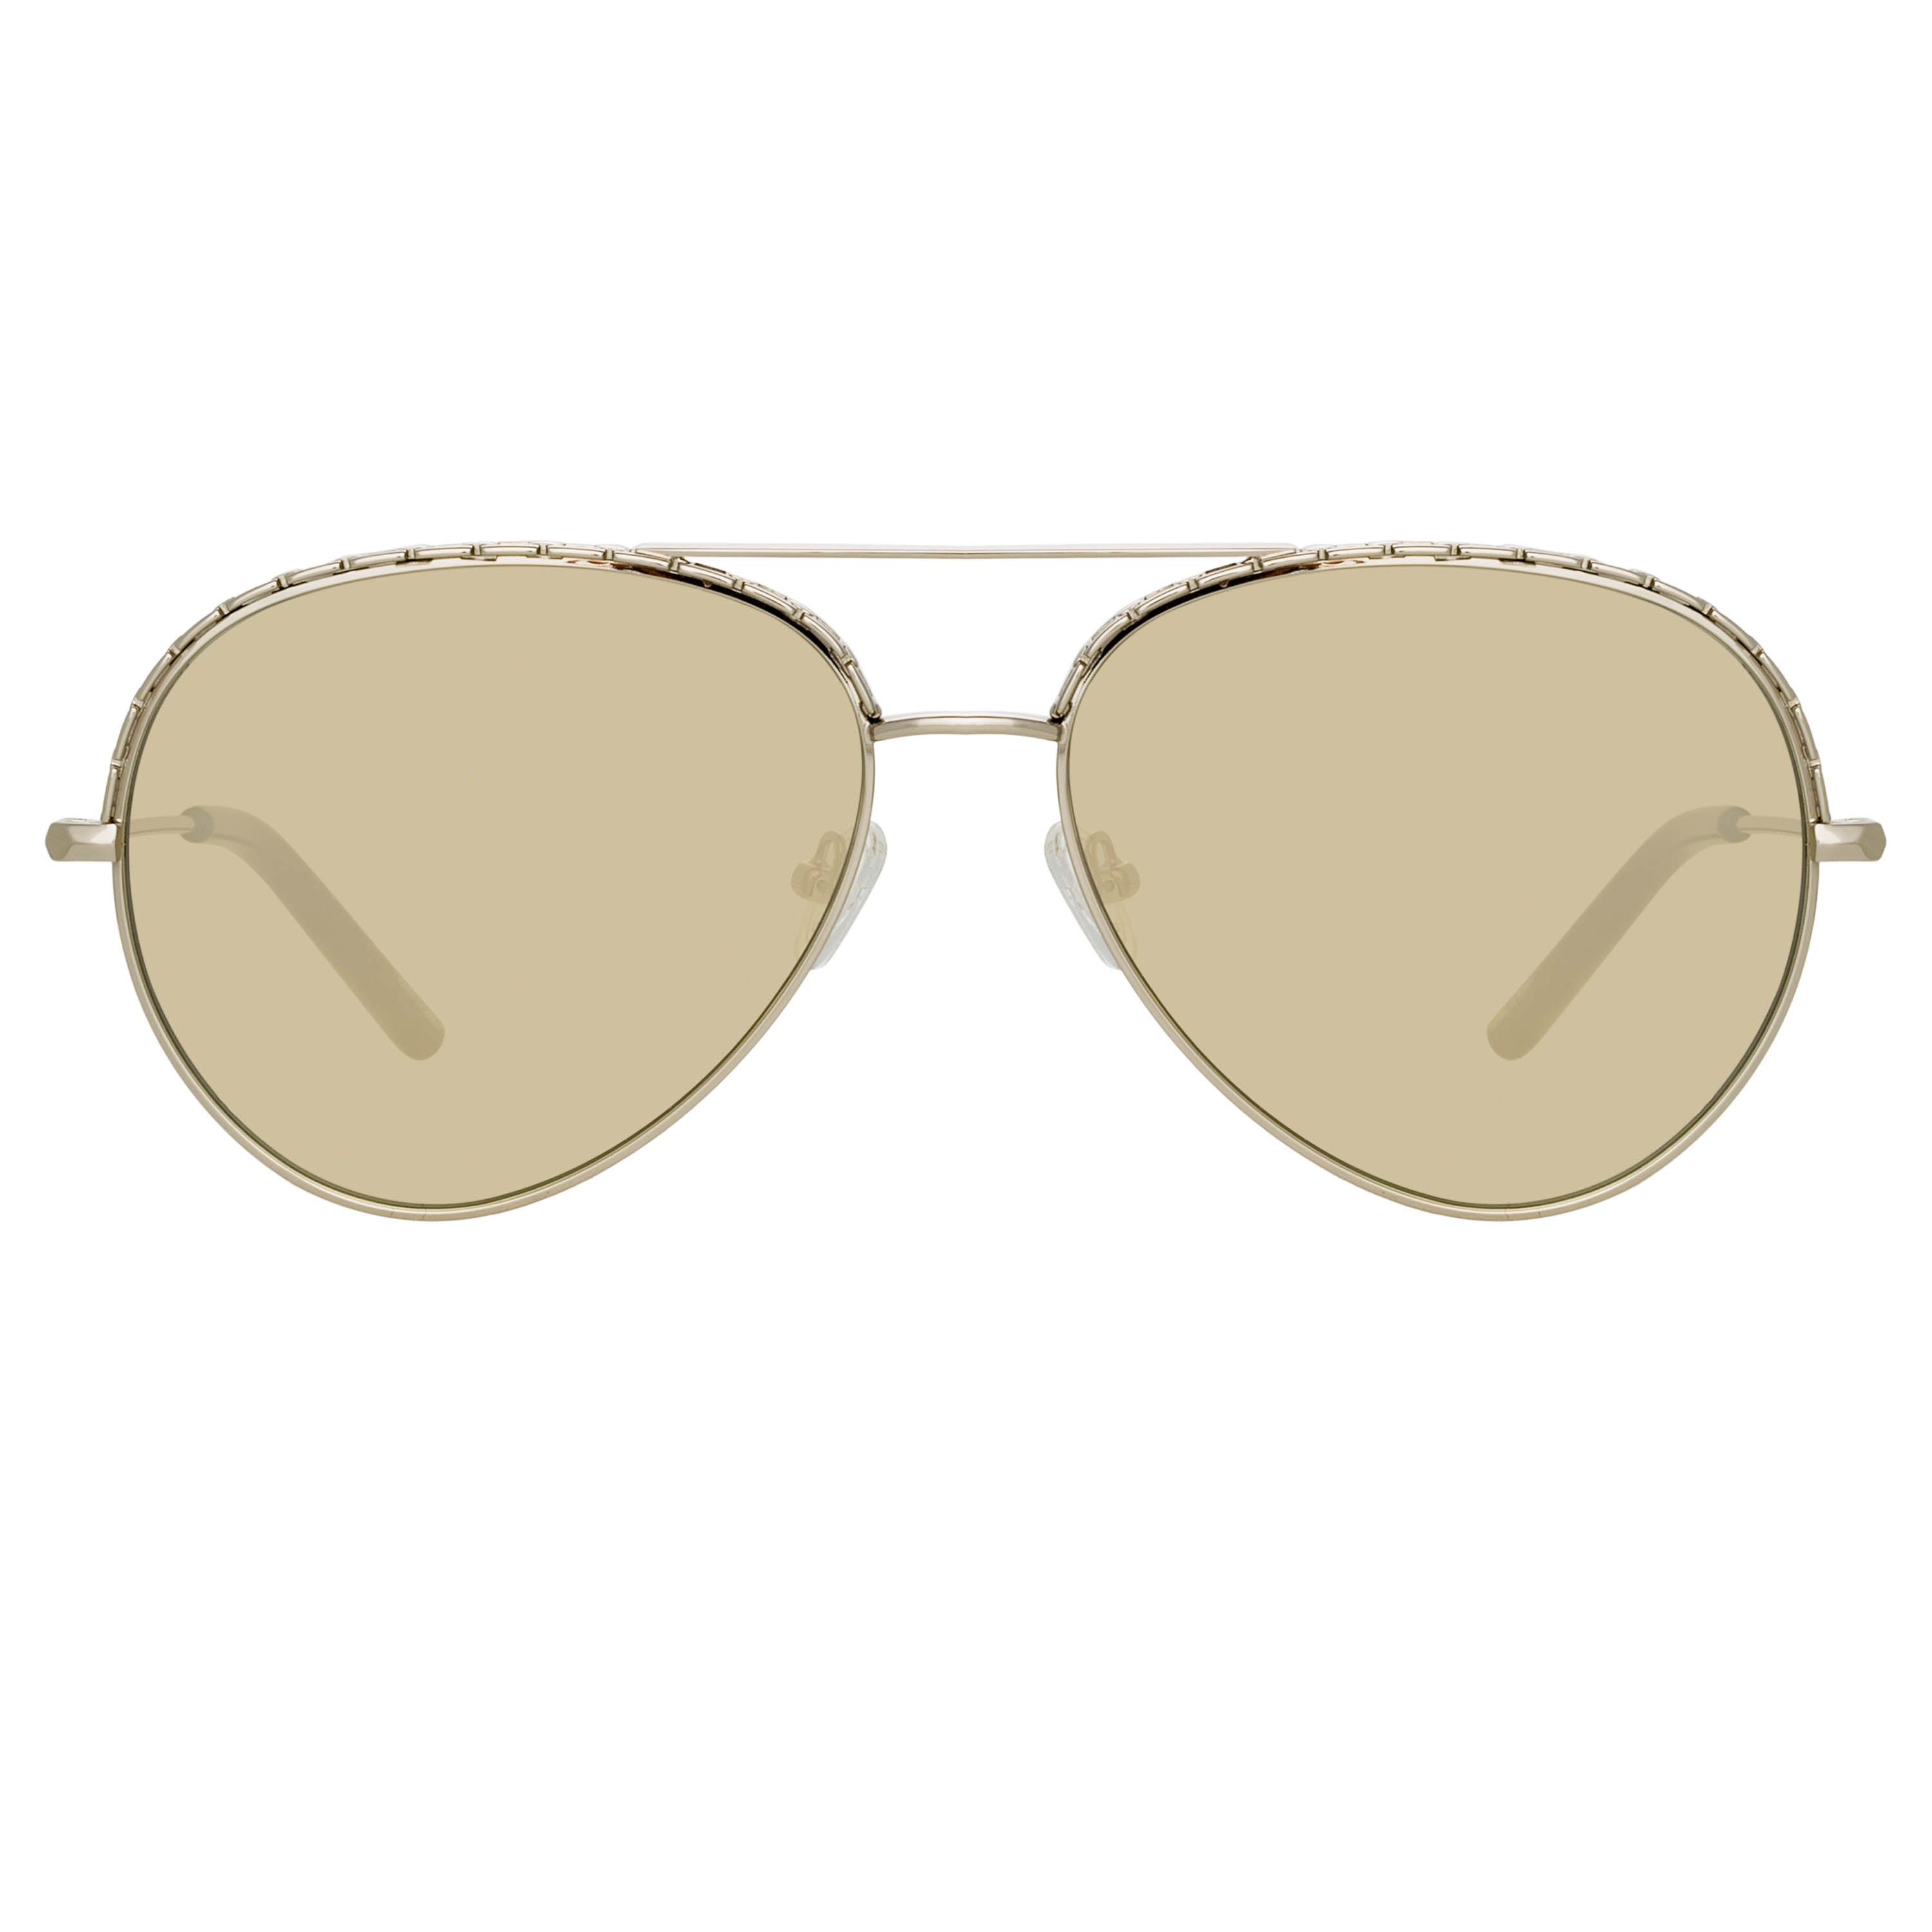 Matthew Williamson Magnolia Sunglasses in Silver – LINDA FARROW 